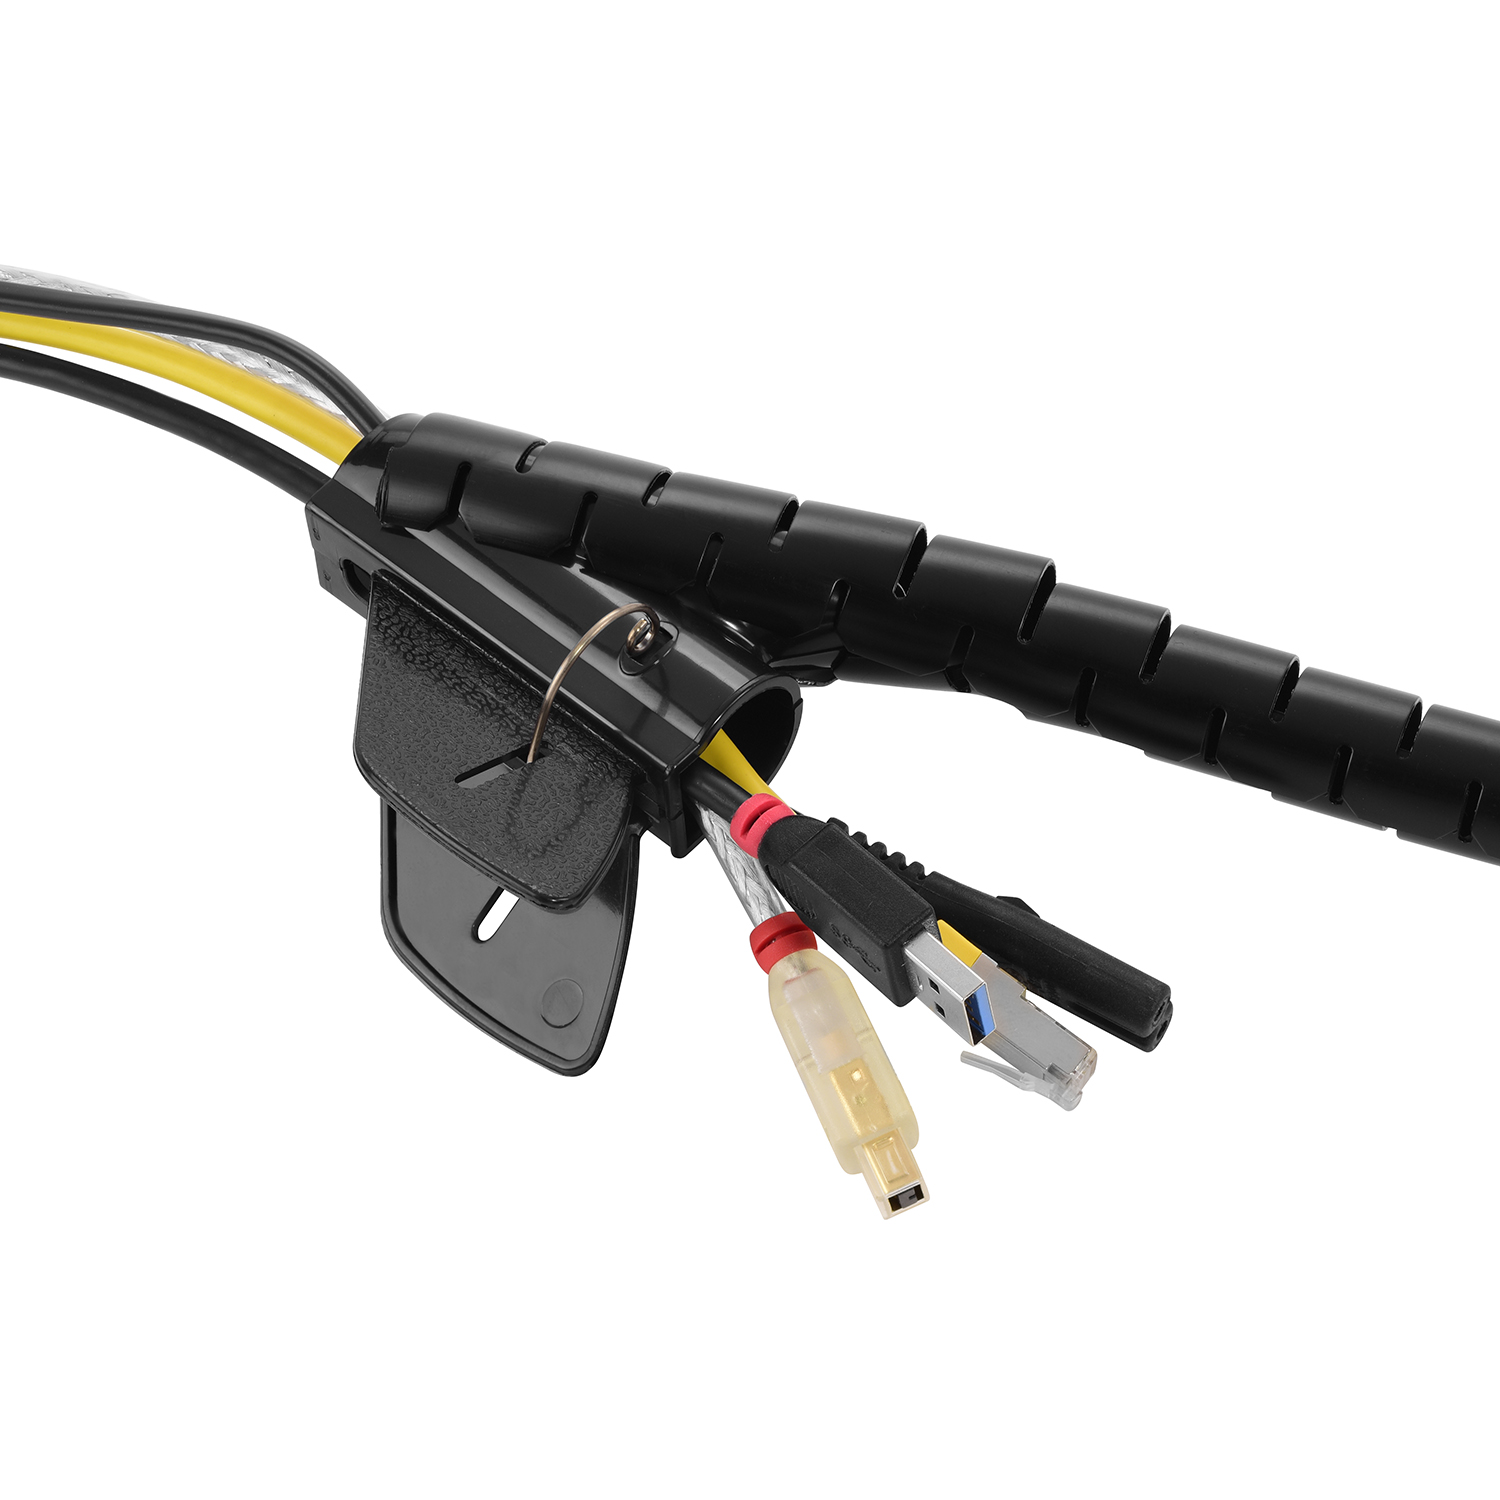 Schwarz 2m Kabelschlauch, mit Schwarz, Einfädelhilfe, Premium TPFNET 20mm, Spiral-Kabelschlauch